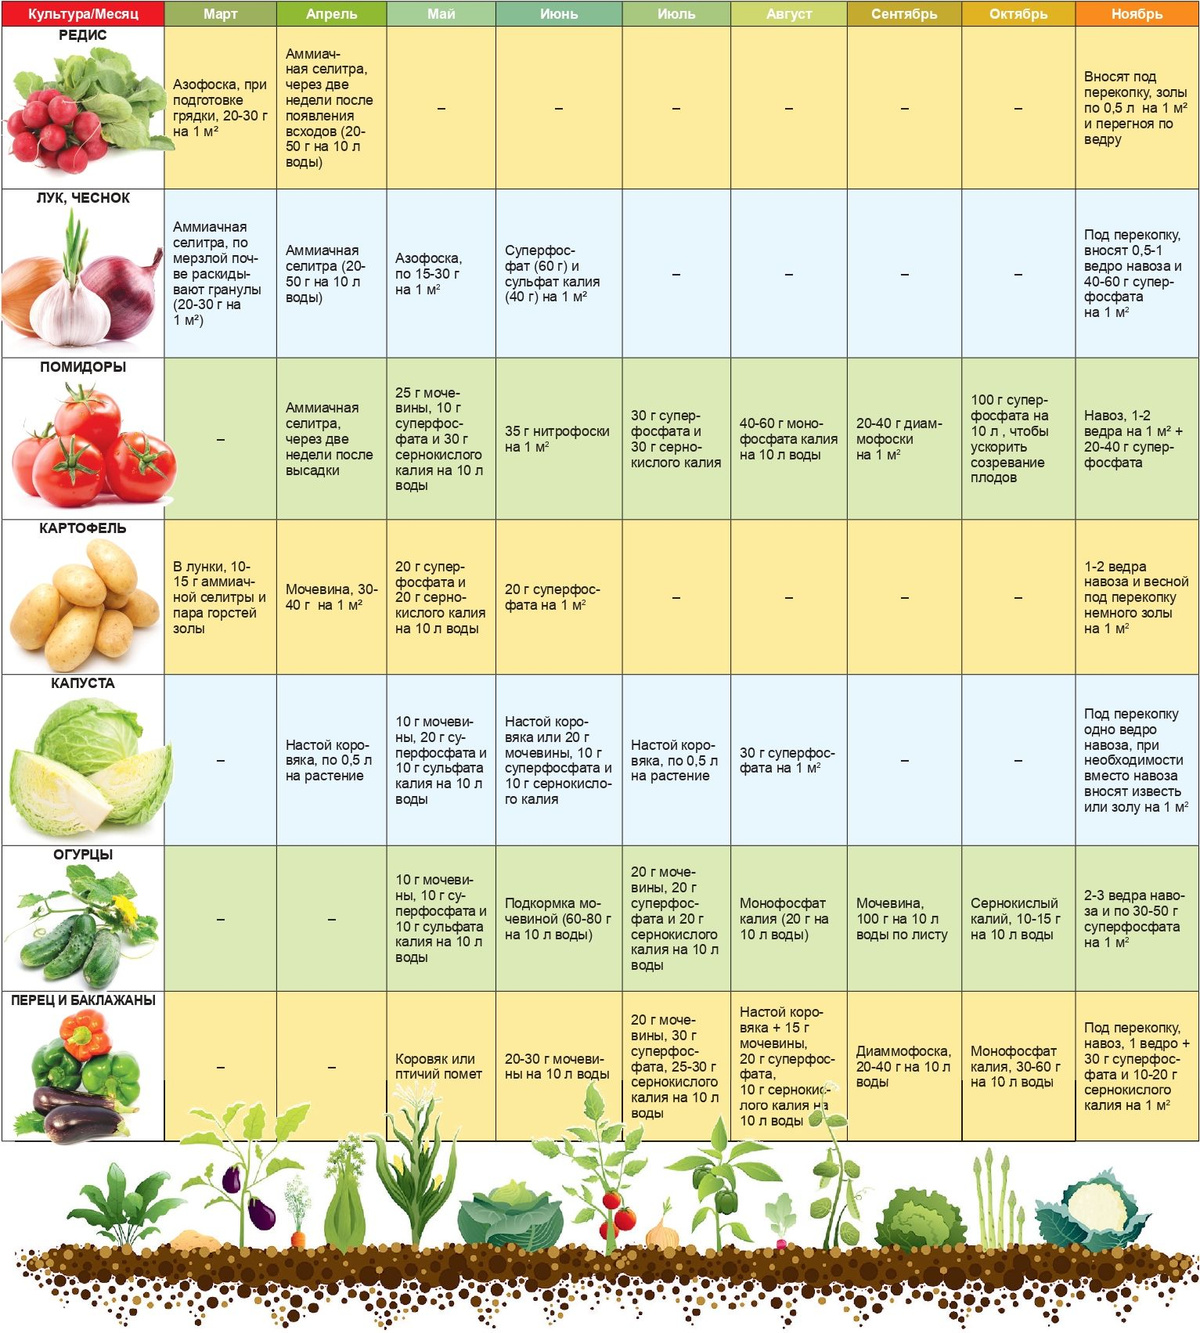 Удобрение содержит полный комплекс веществ, необходимых для полноценного и сбалансированного питания растений